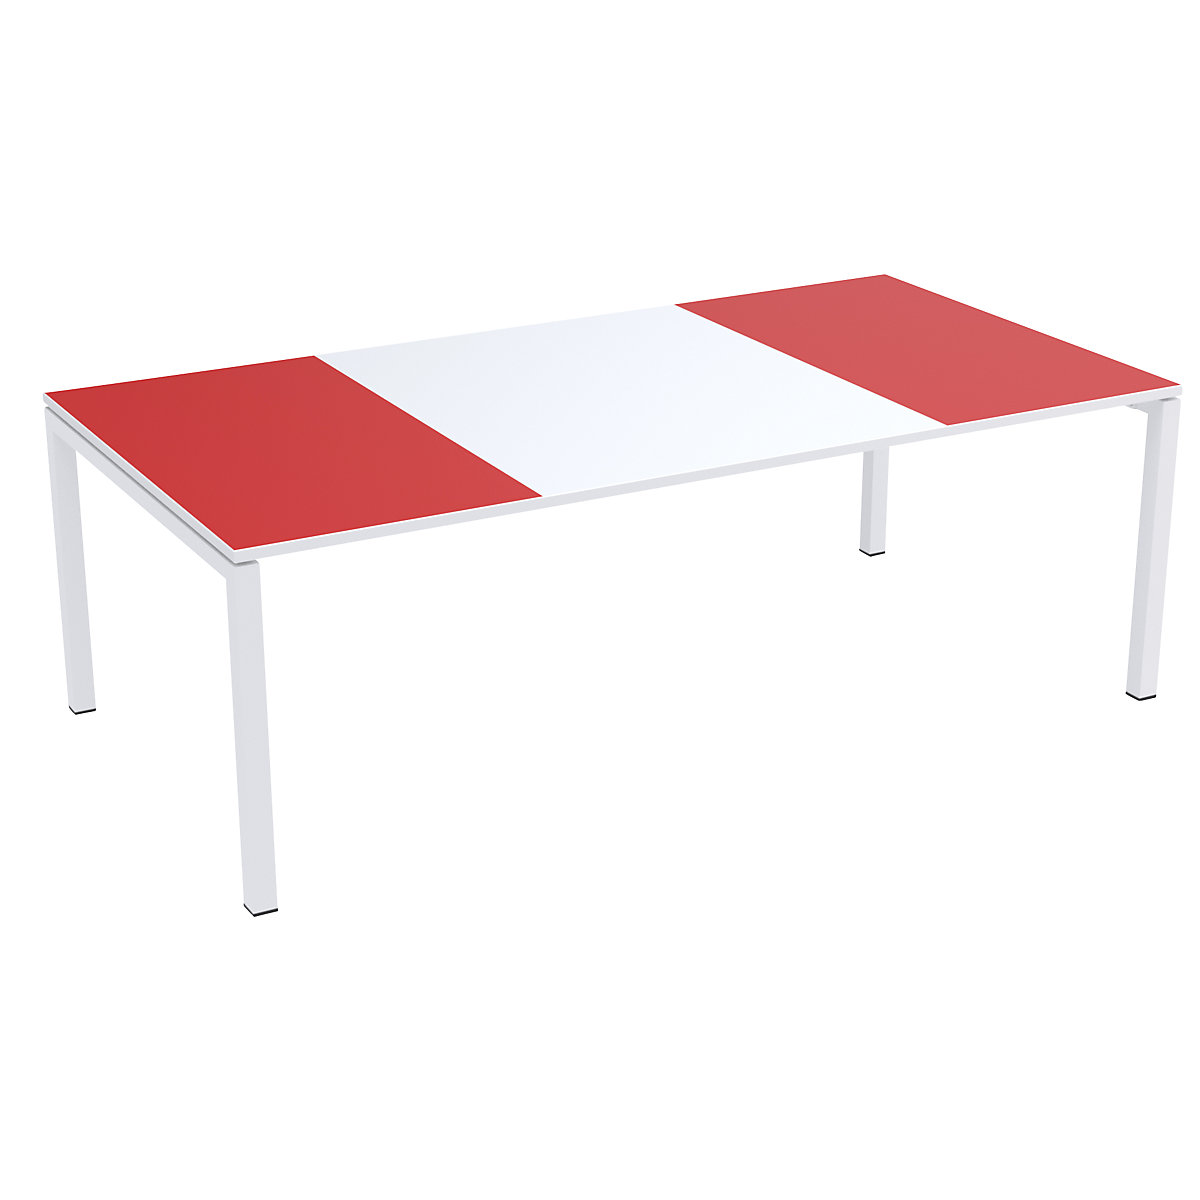 Konferenztisch easyDesk® Paperflow, HxBxT 750 x 2200 x 1140 mm, weiß/rot-3